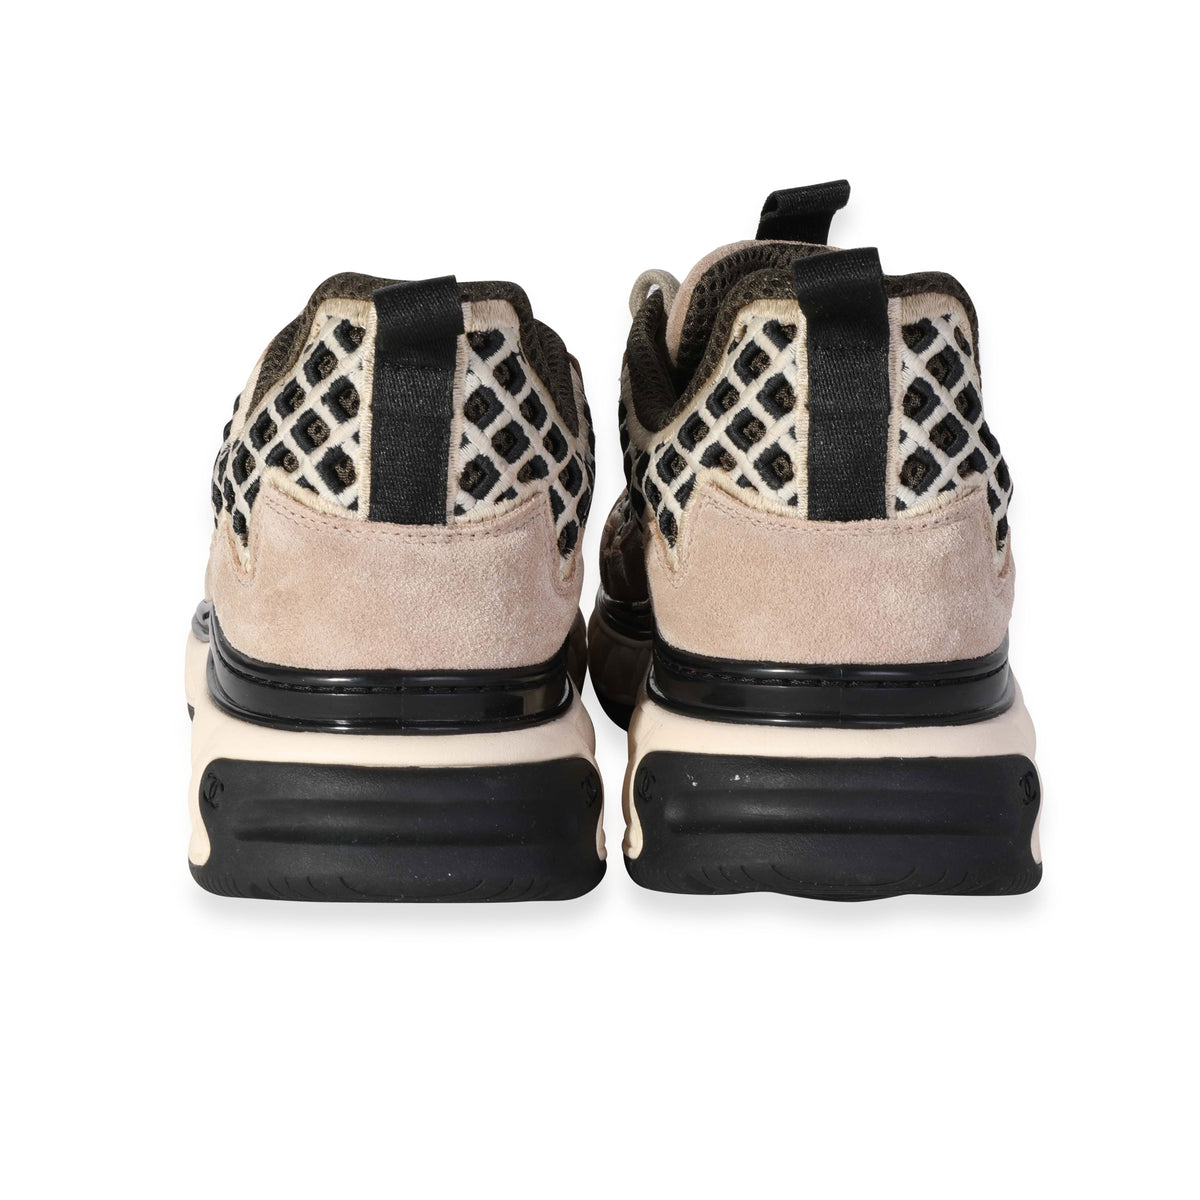 Chanel Sneaker 'Beige Embroidery' (9 US)